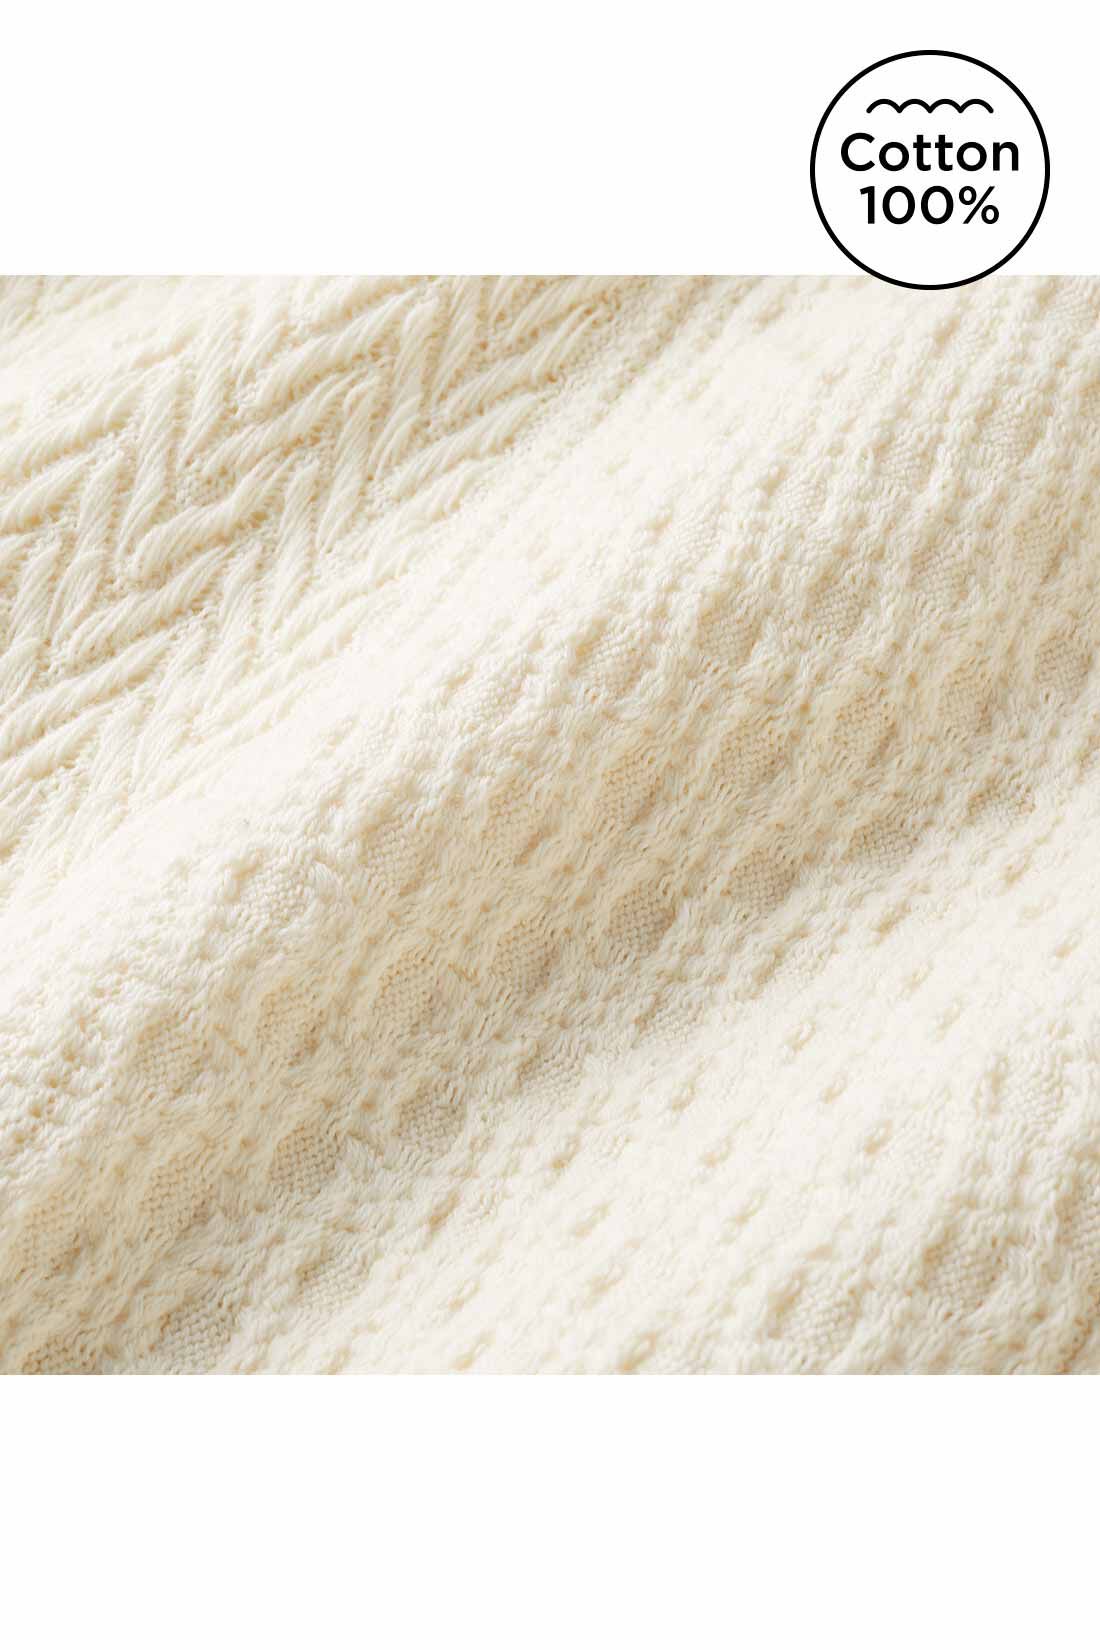 Live in  comfort|Live love cottonプロジェクト　リブ イン コンフォート　編み柄が素敵なオーガニックコットンロングスカート〈ブラック〉|ニット見えするジャカード編みの、薄くてやわらかいカットソー素材。